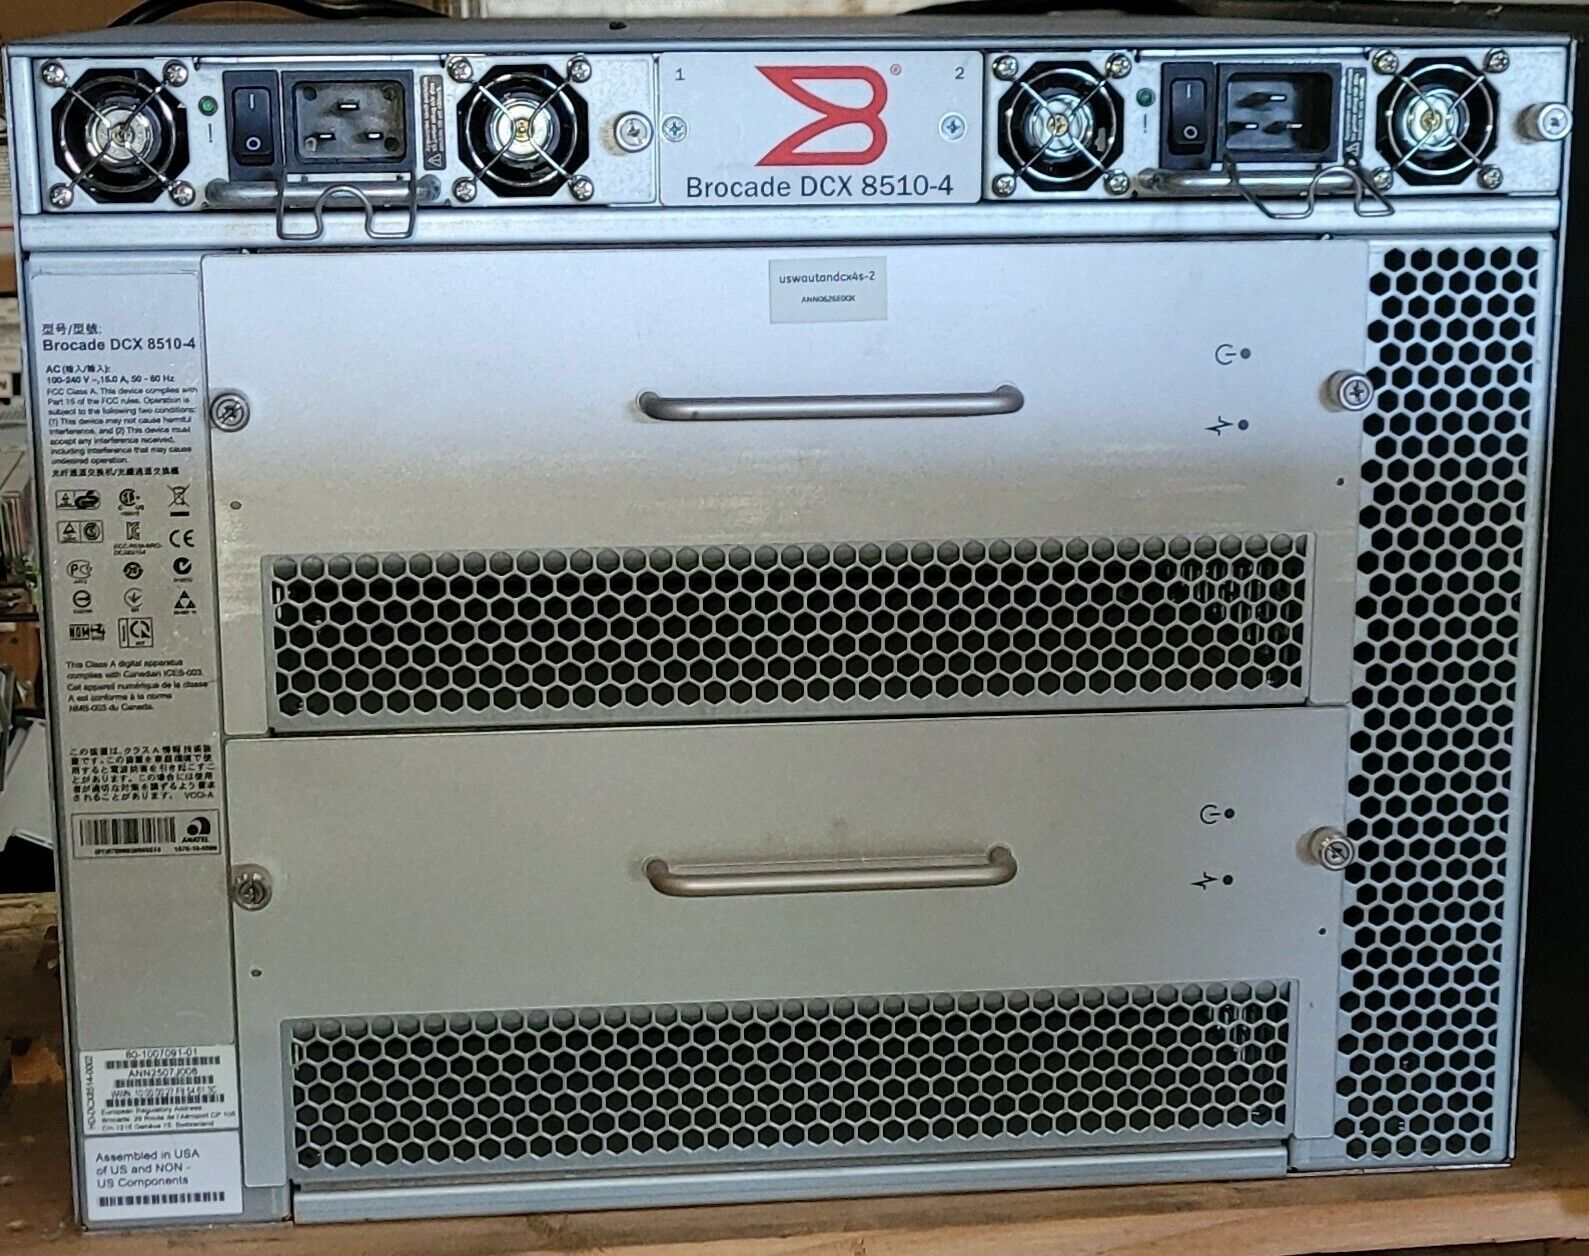 Brocade DCX 8510-4 SAN Backbone Switch w/ 2x CR16-4, 2x PSU